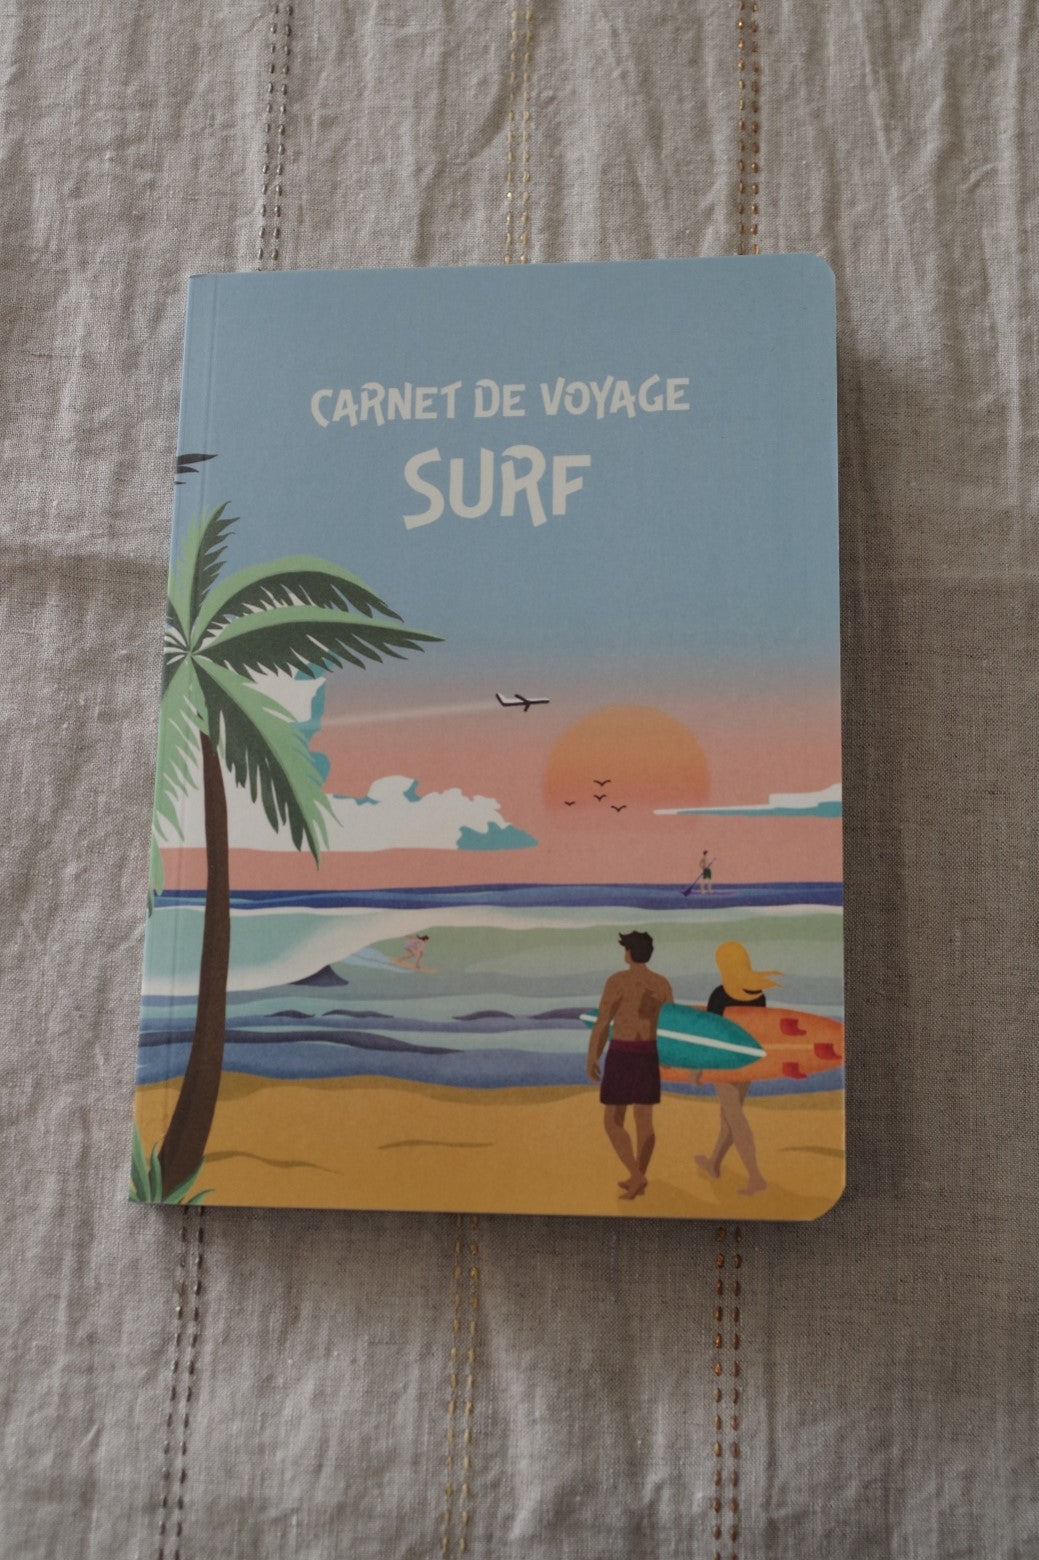 Carnet de voyage surf